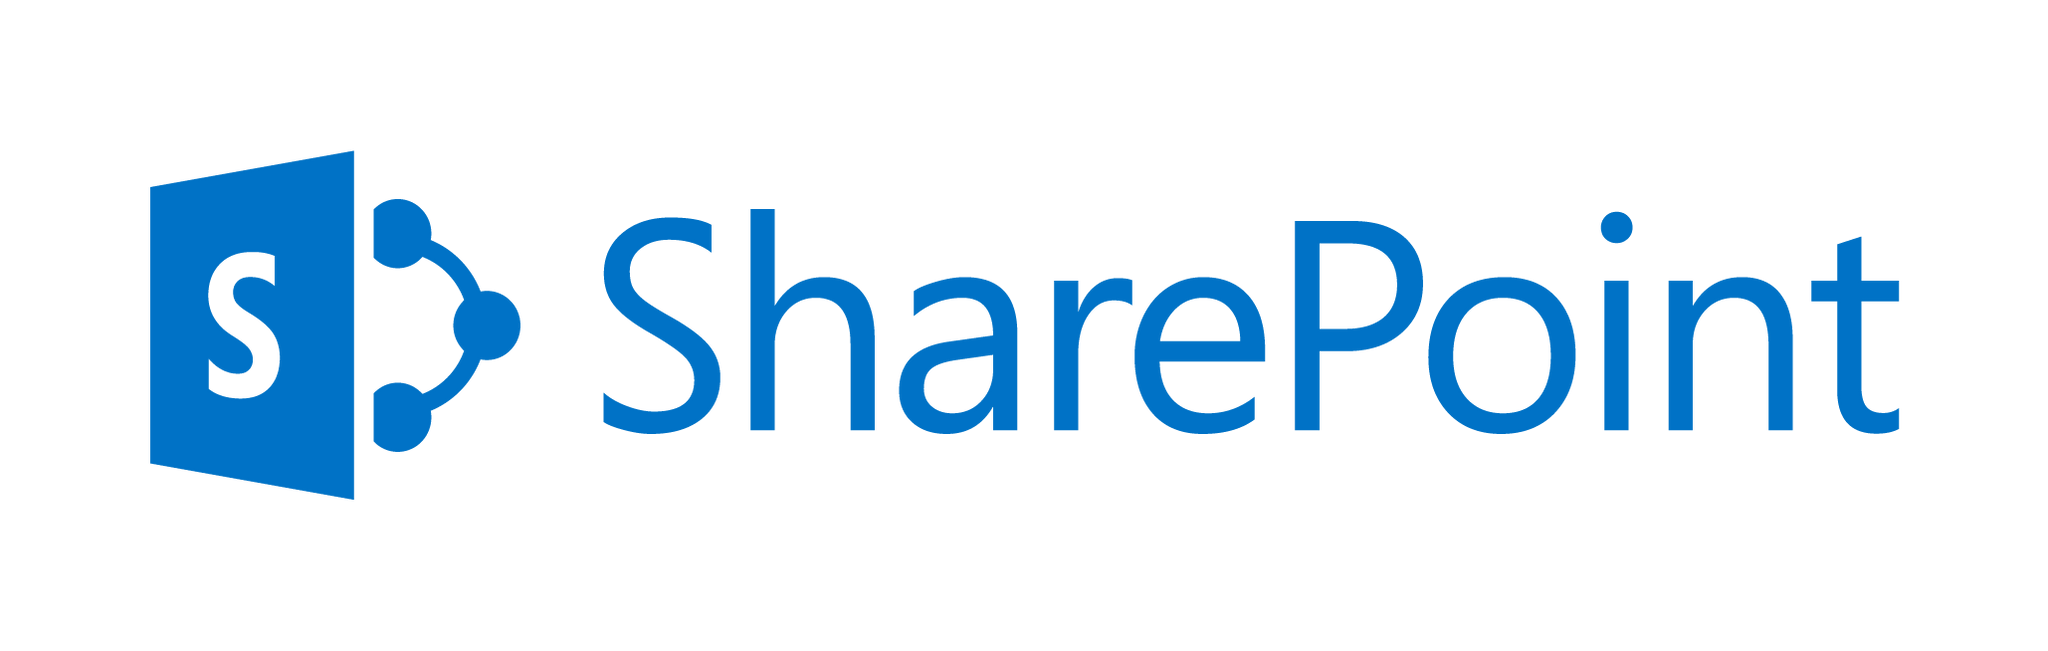 Microsoft Sharepoint はダウンしていますか?